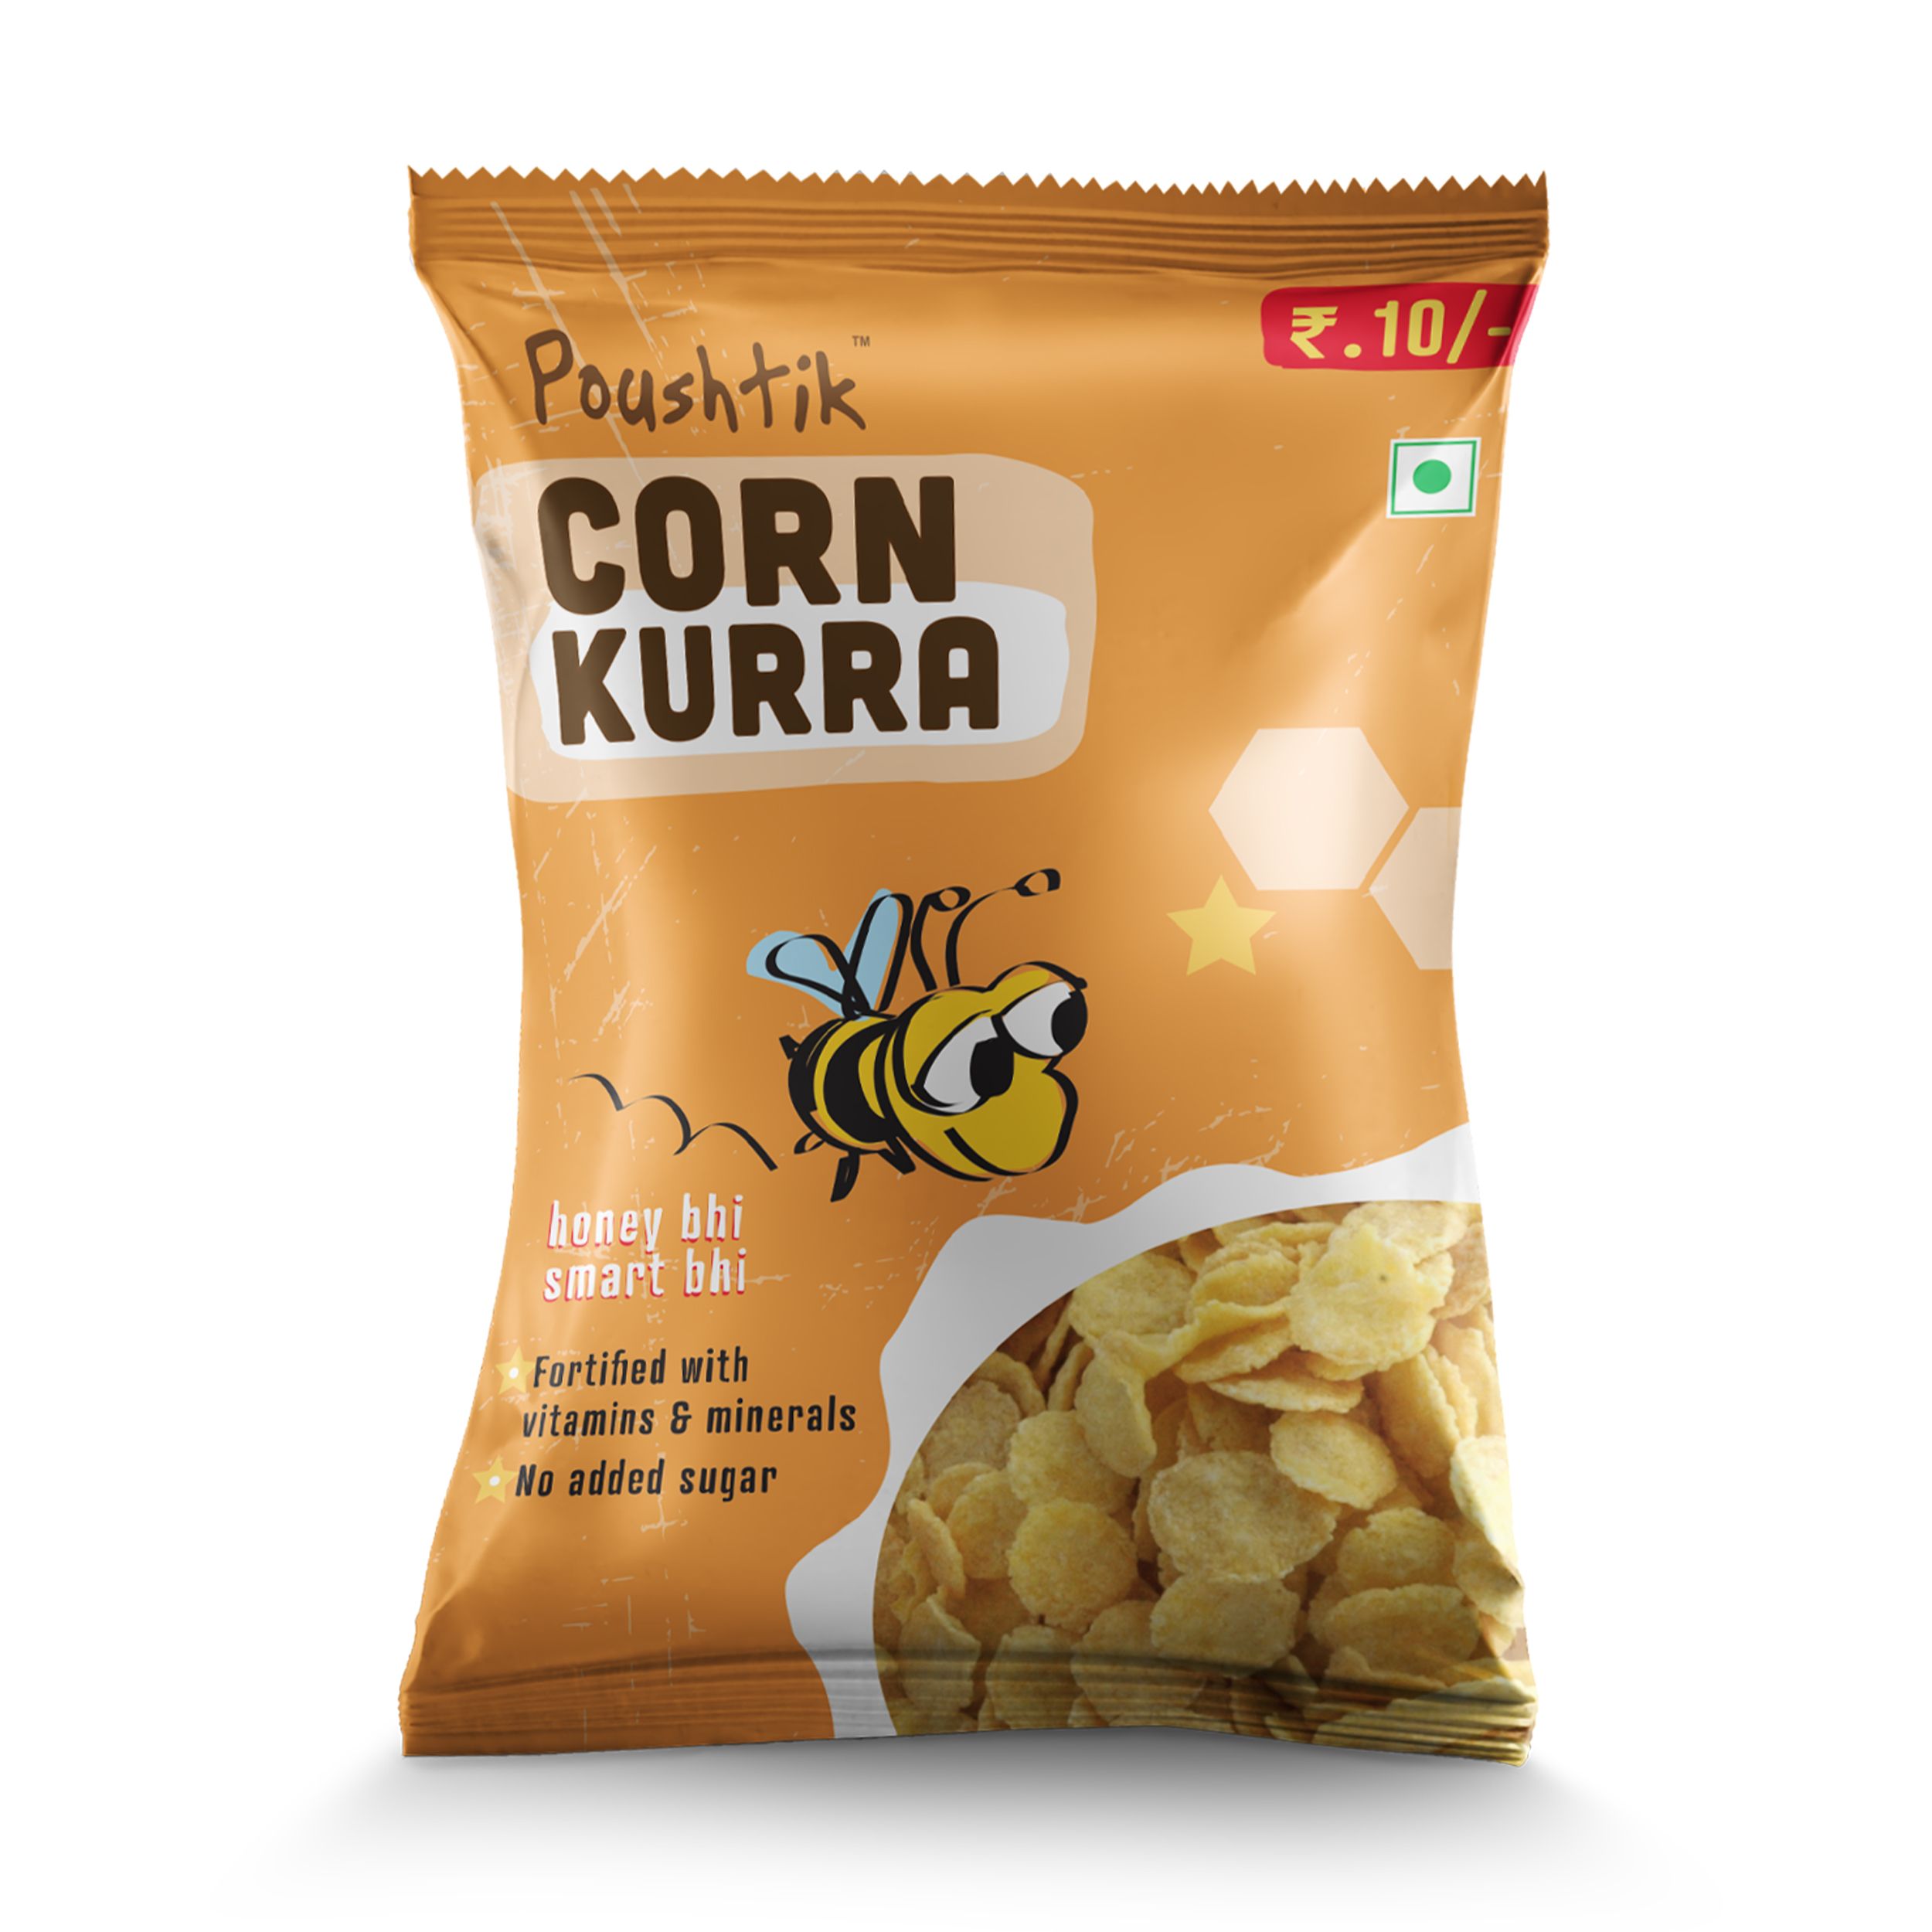 Pristine Poushtik Corn Kurra Image